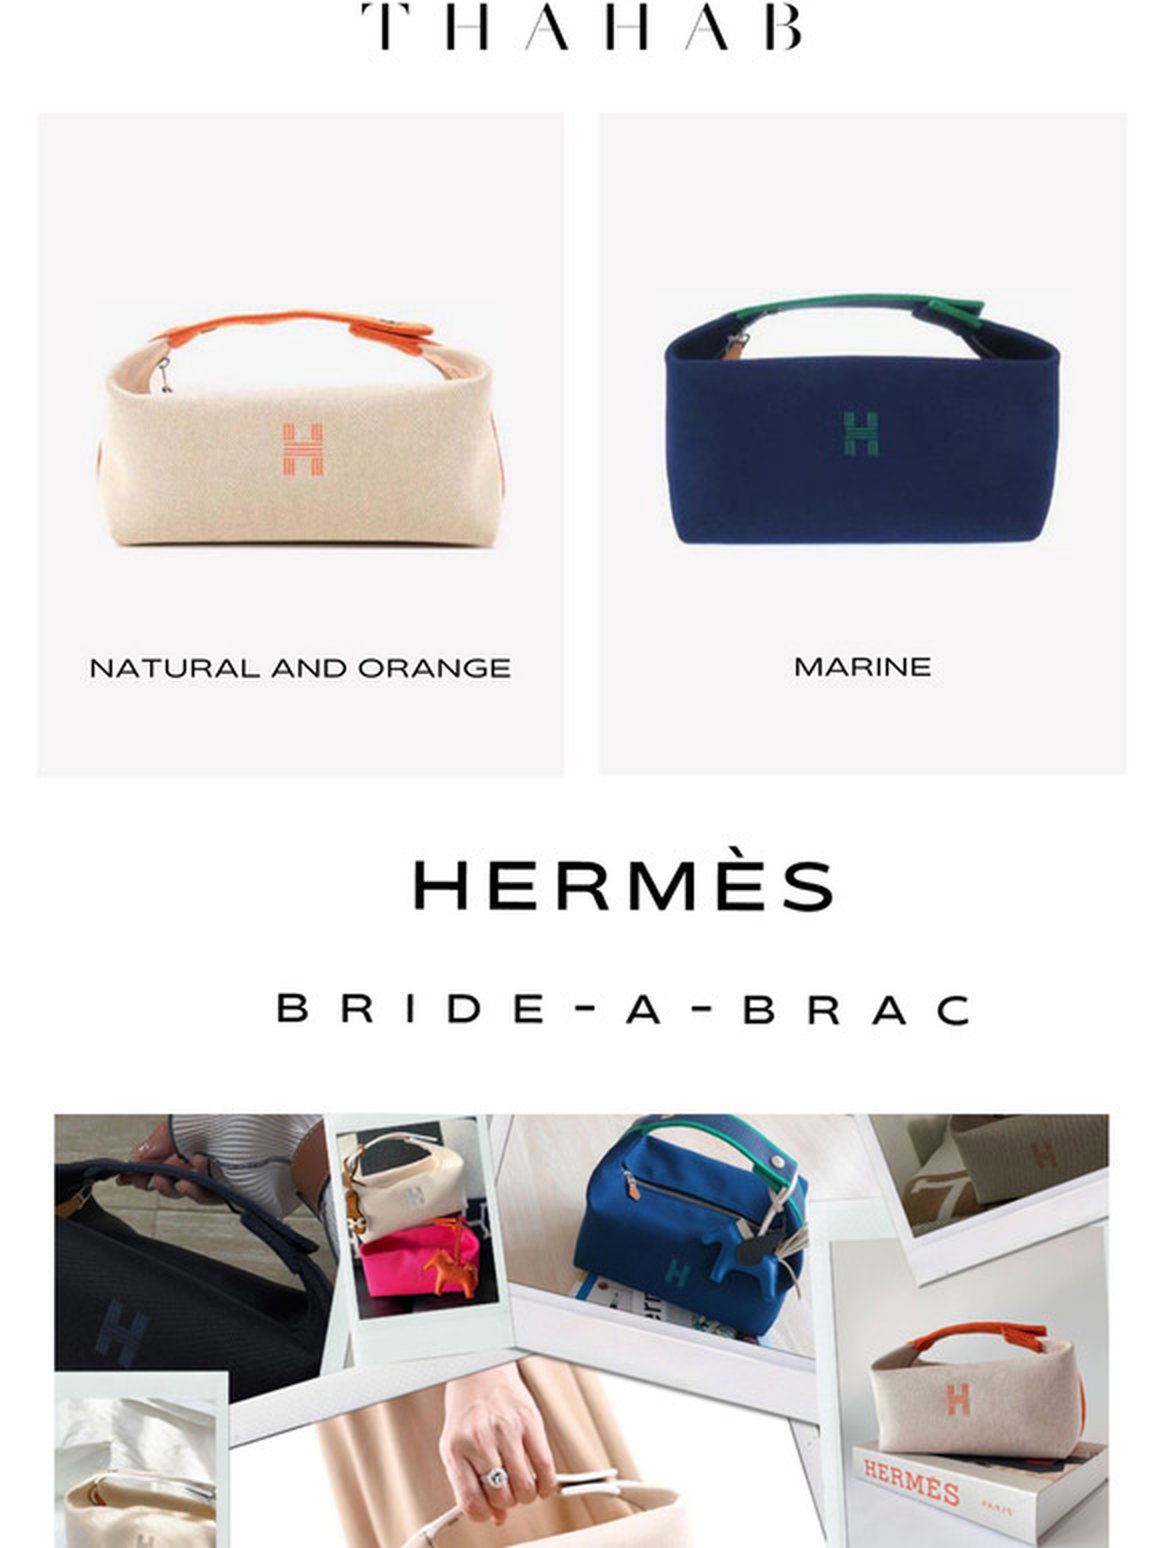 Thahab: Hermès Bride-A-Brac